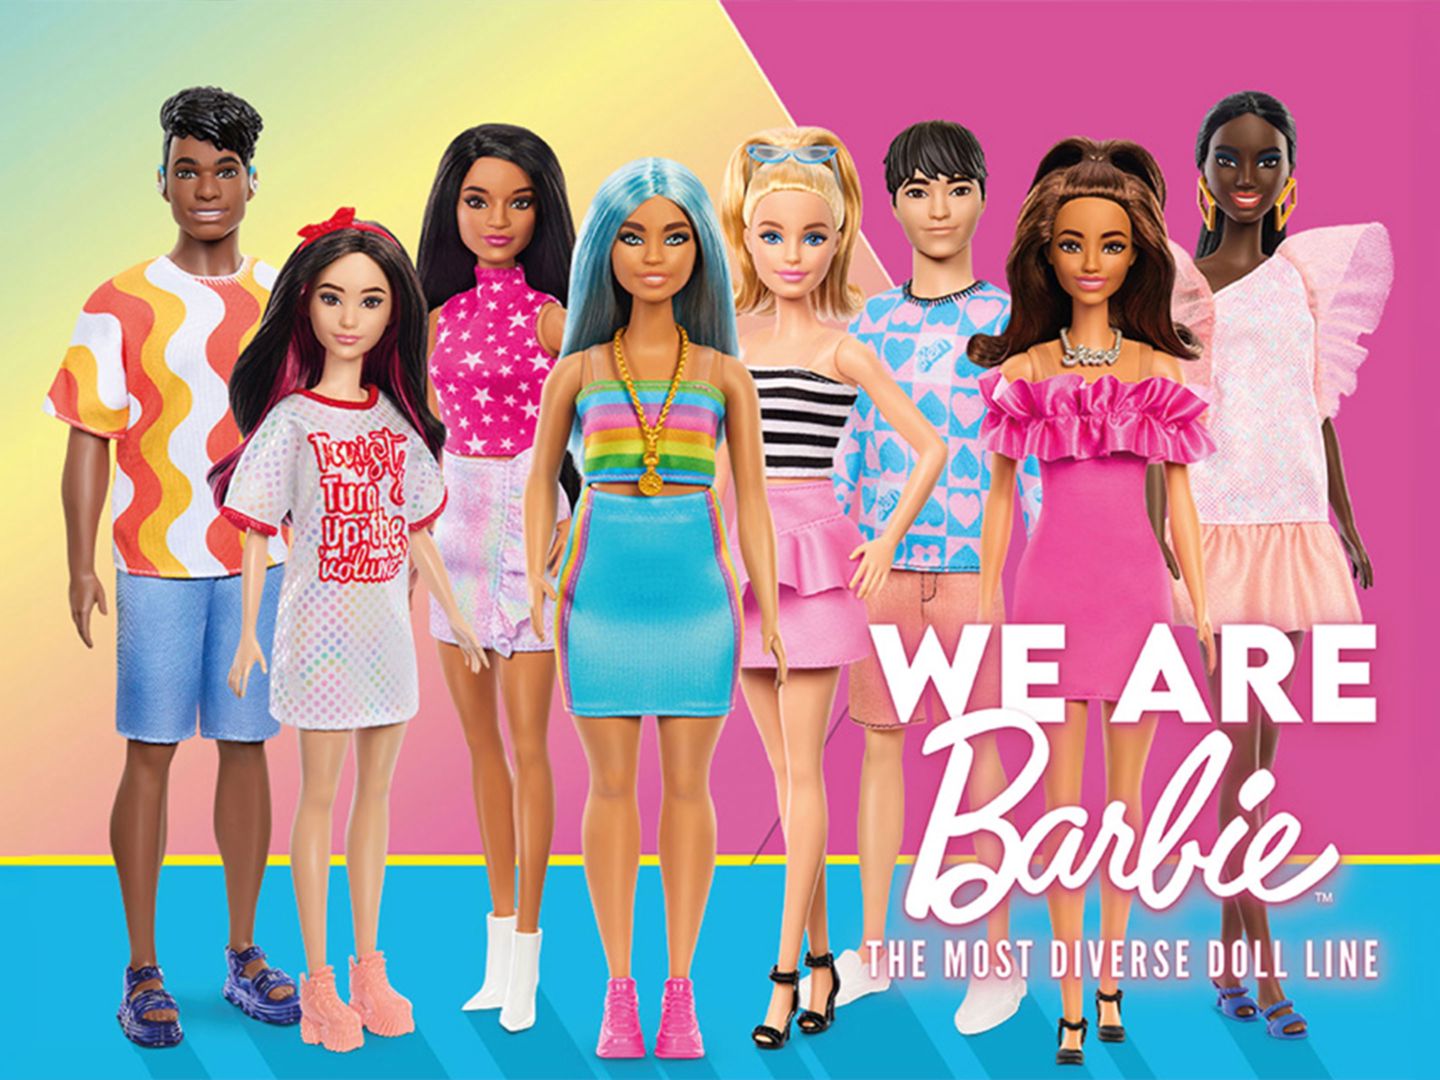 Verzameling_van_Barbie_Fashionistas_met_de_volgende_boodschap_-_We_are_Barbie_-_the_most_diverse_doll_line.jpg